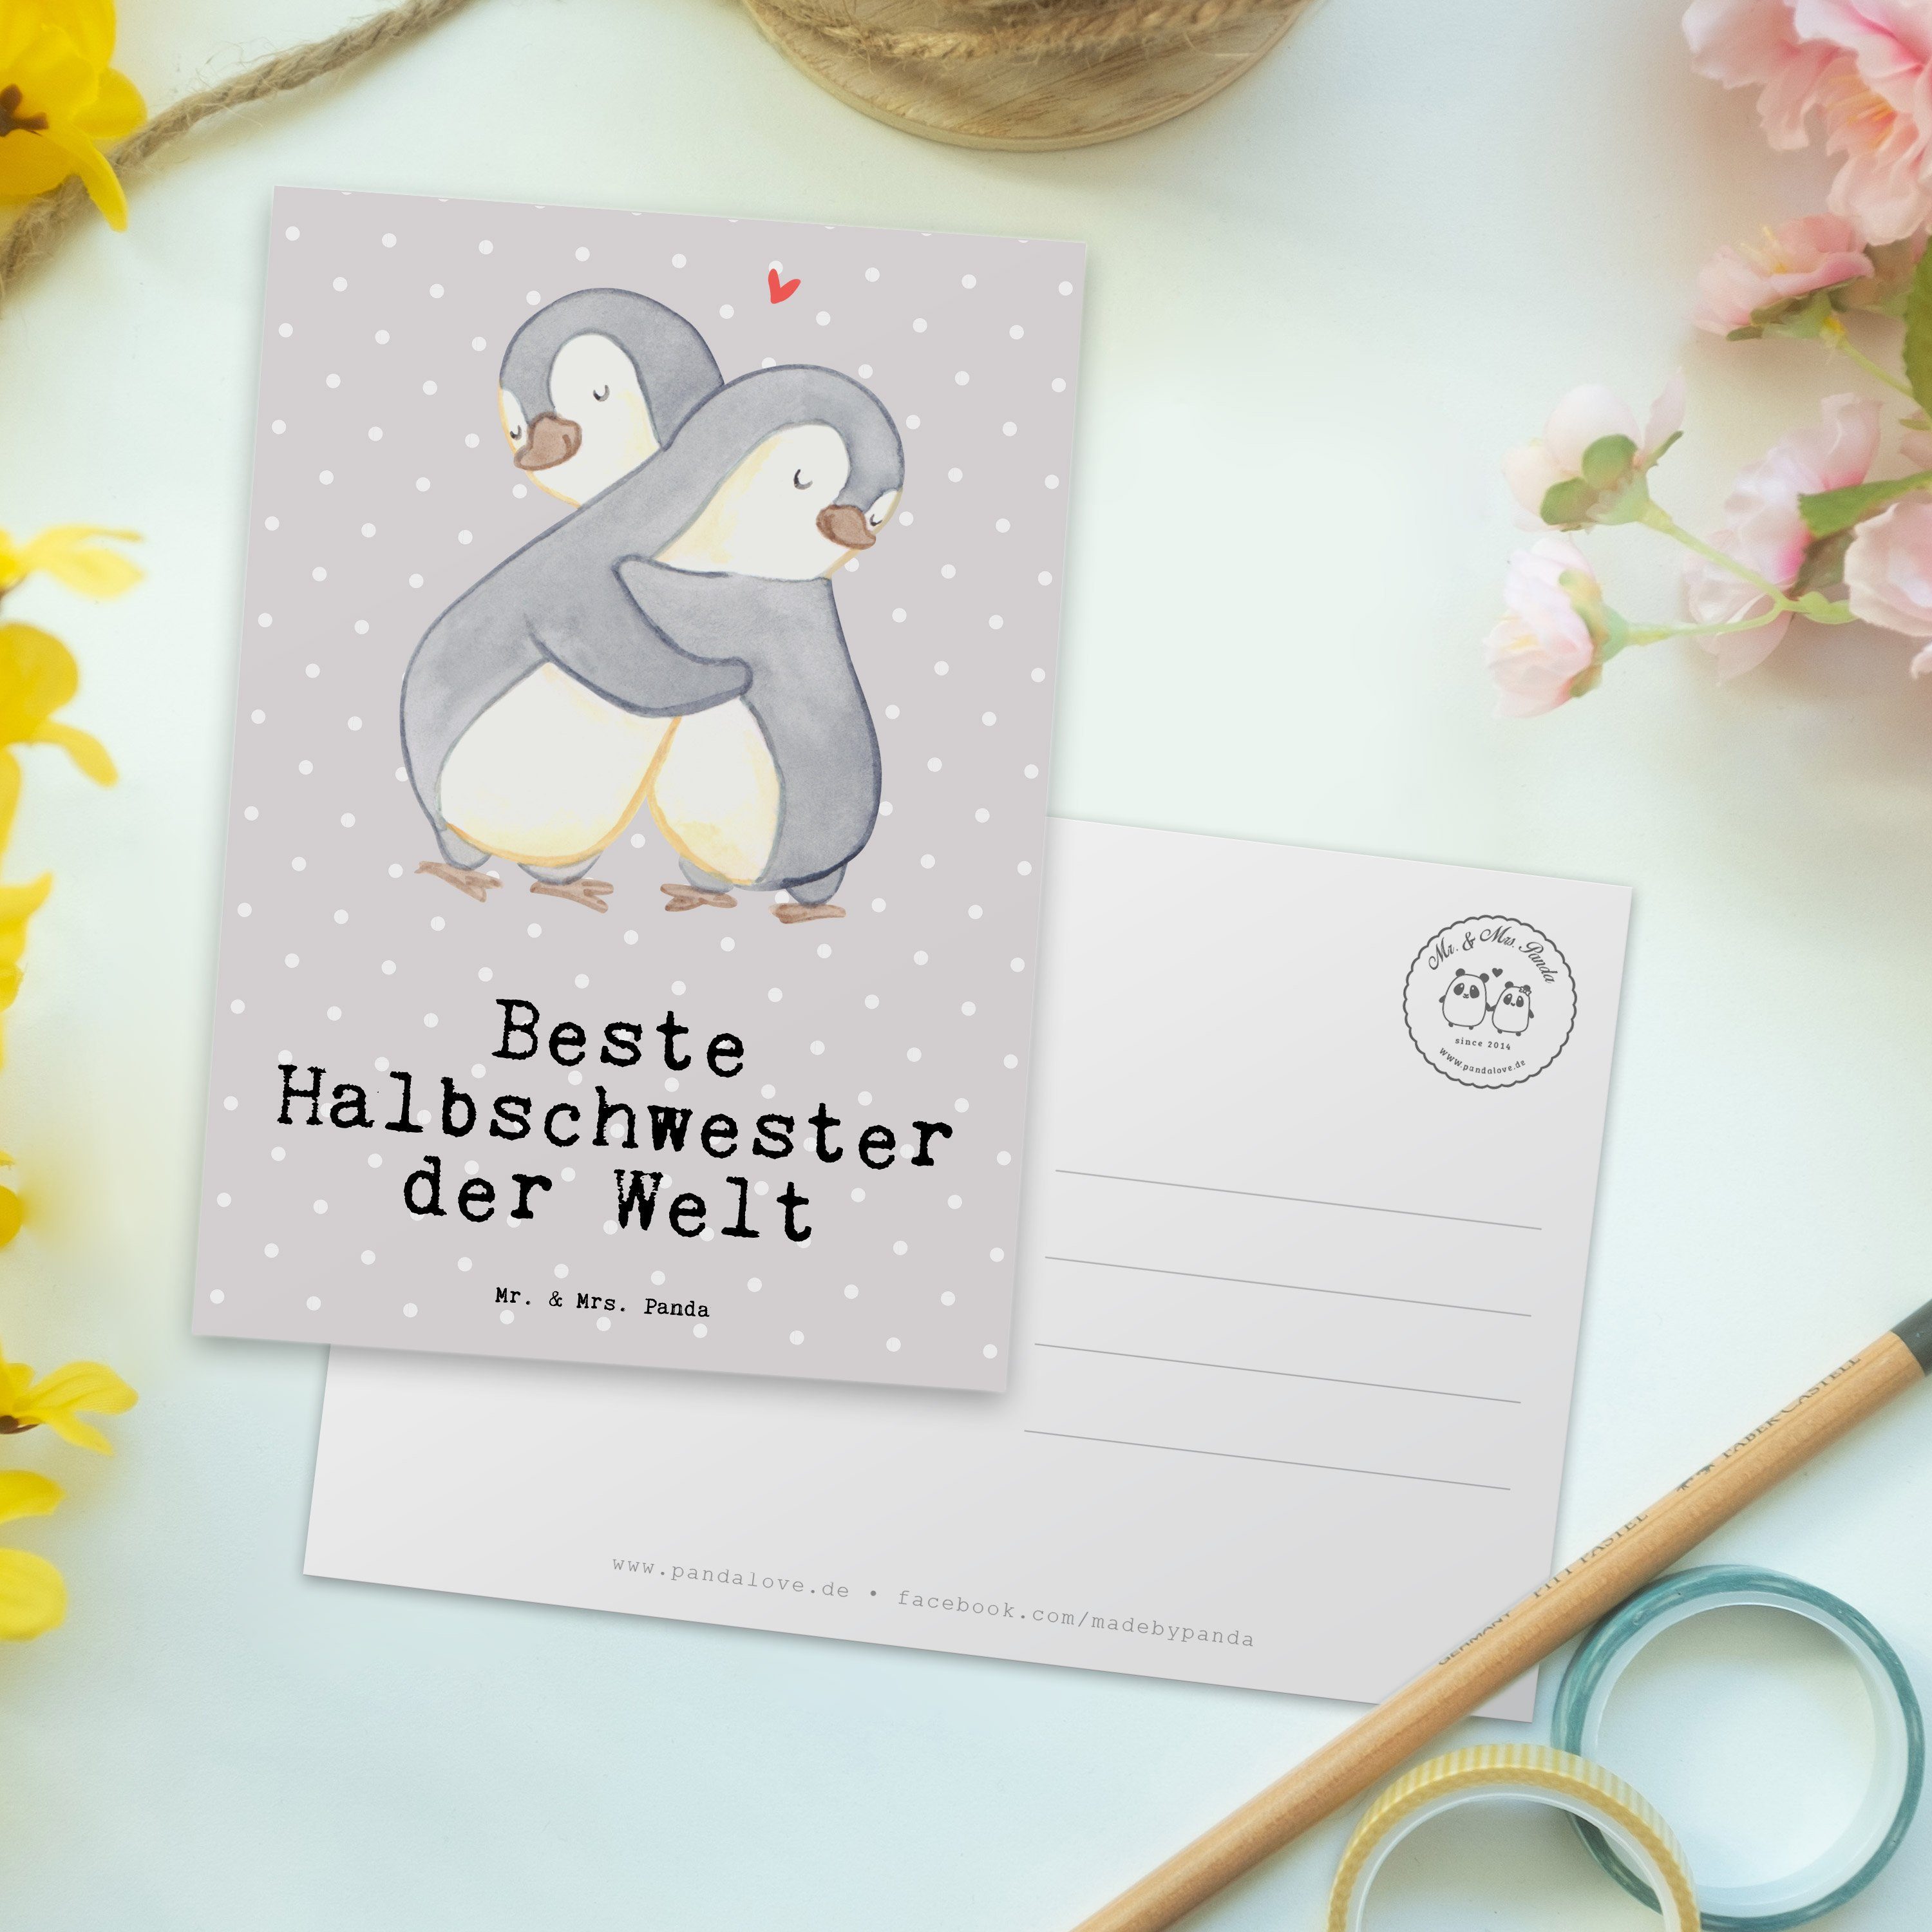 Beste Einla Geschenk, Welt Grau - Panda Mr. der Mrs. & Pinguin Postkarte - Halbschwester Pastell